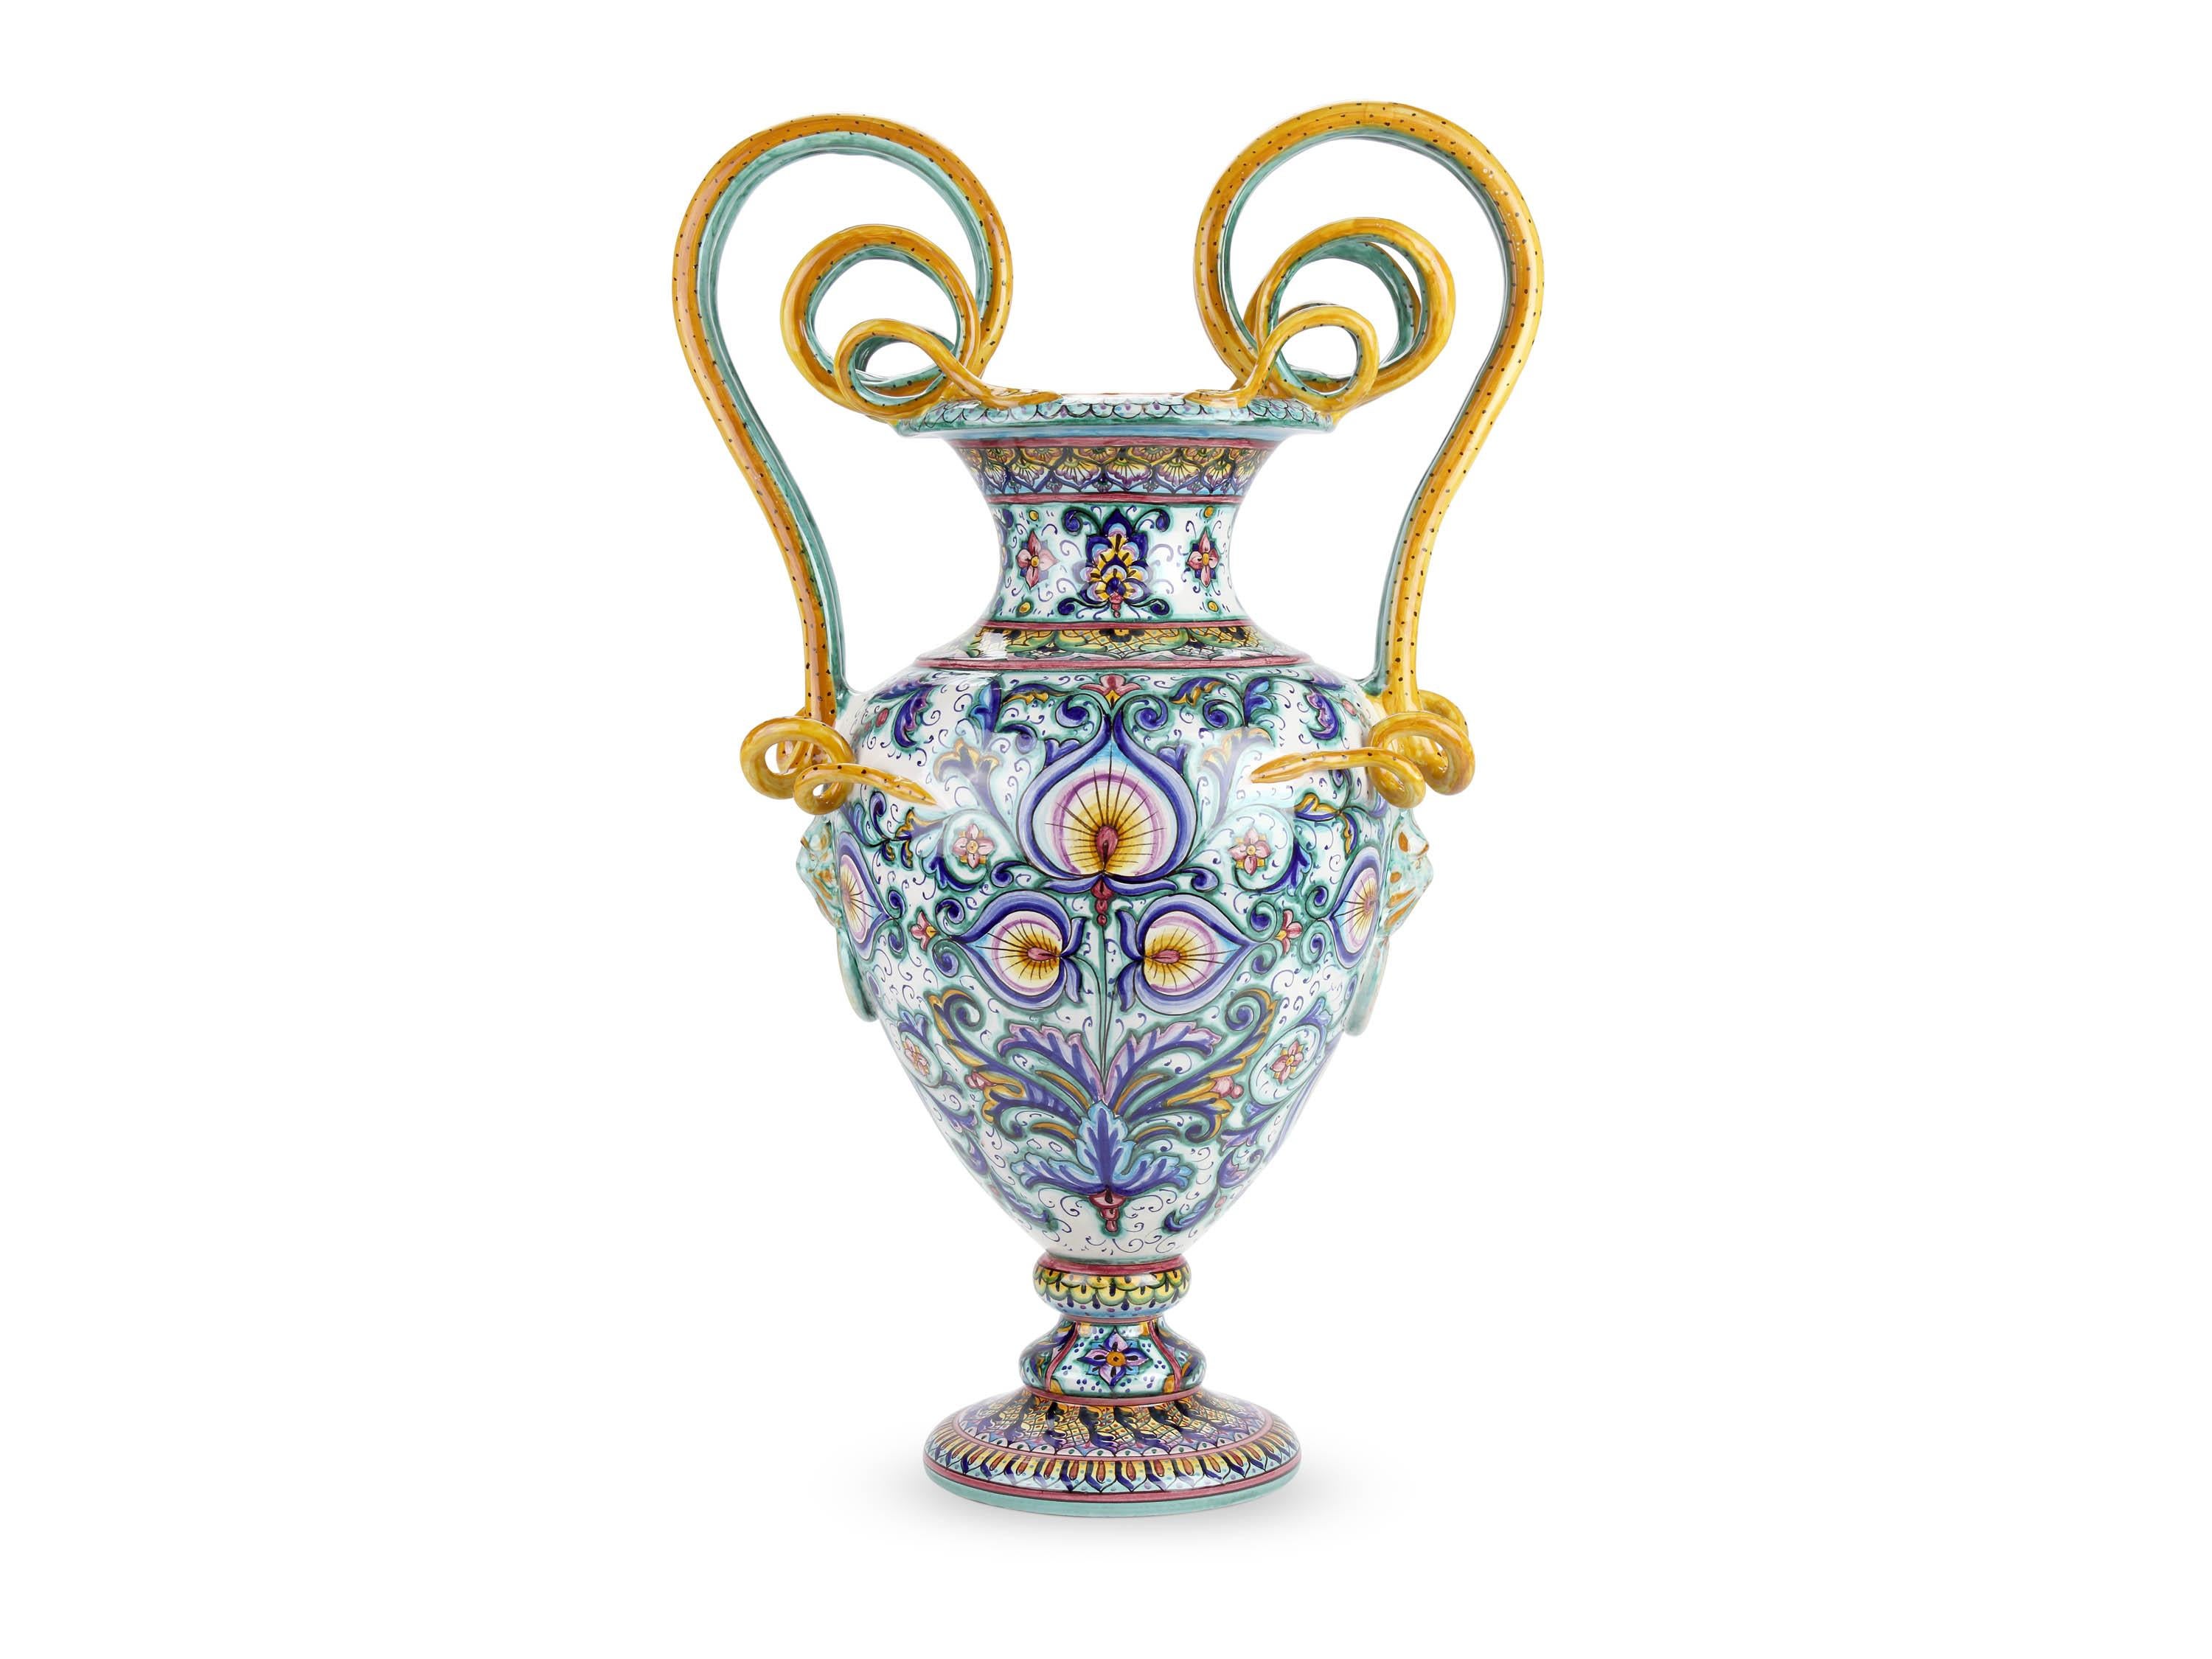 Cette grande amphore luxueuse, en majolique fabriquée en Italie et peinte à la main en polychromie, se caractérise par une présence dense de motifs ornementaux naturalistes qui décorent les différentes parties du vase selon la technique originale de